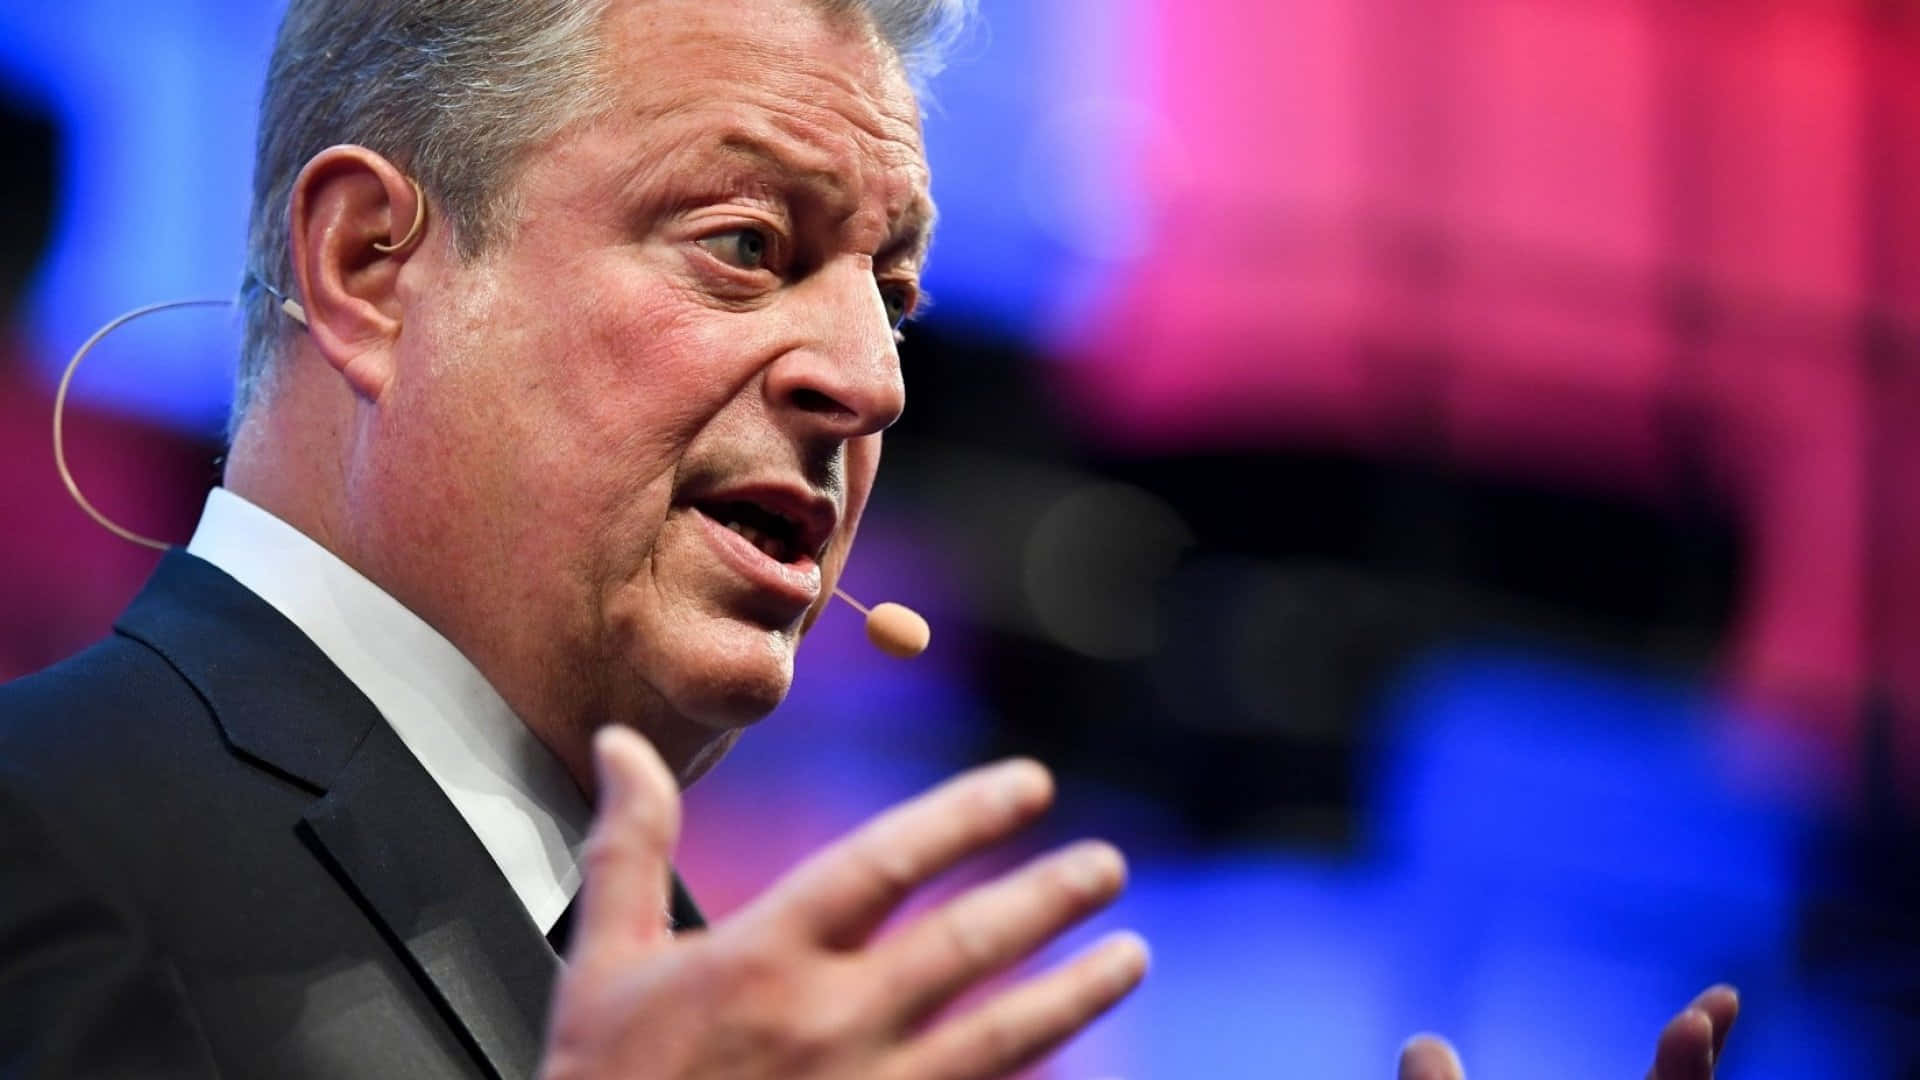 Al Gore delivering an engaging talk Wallpaper